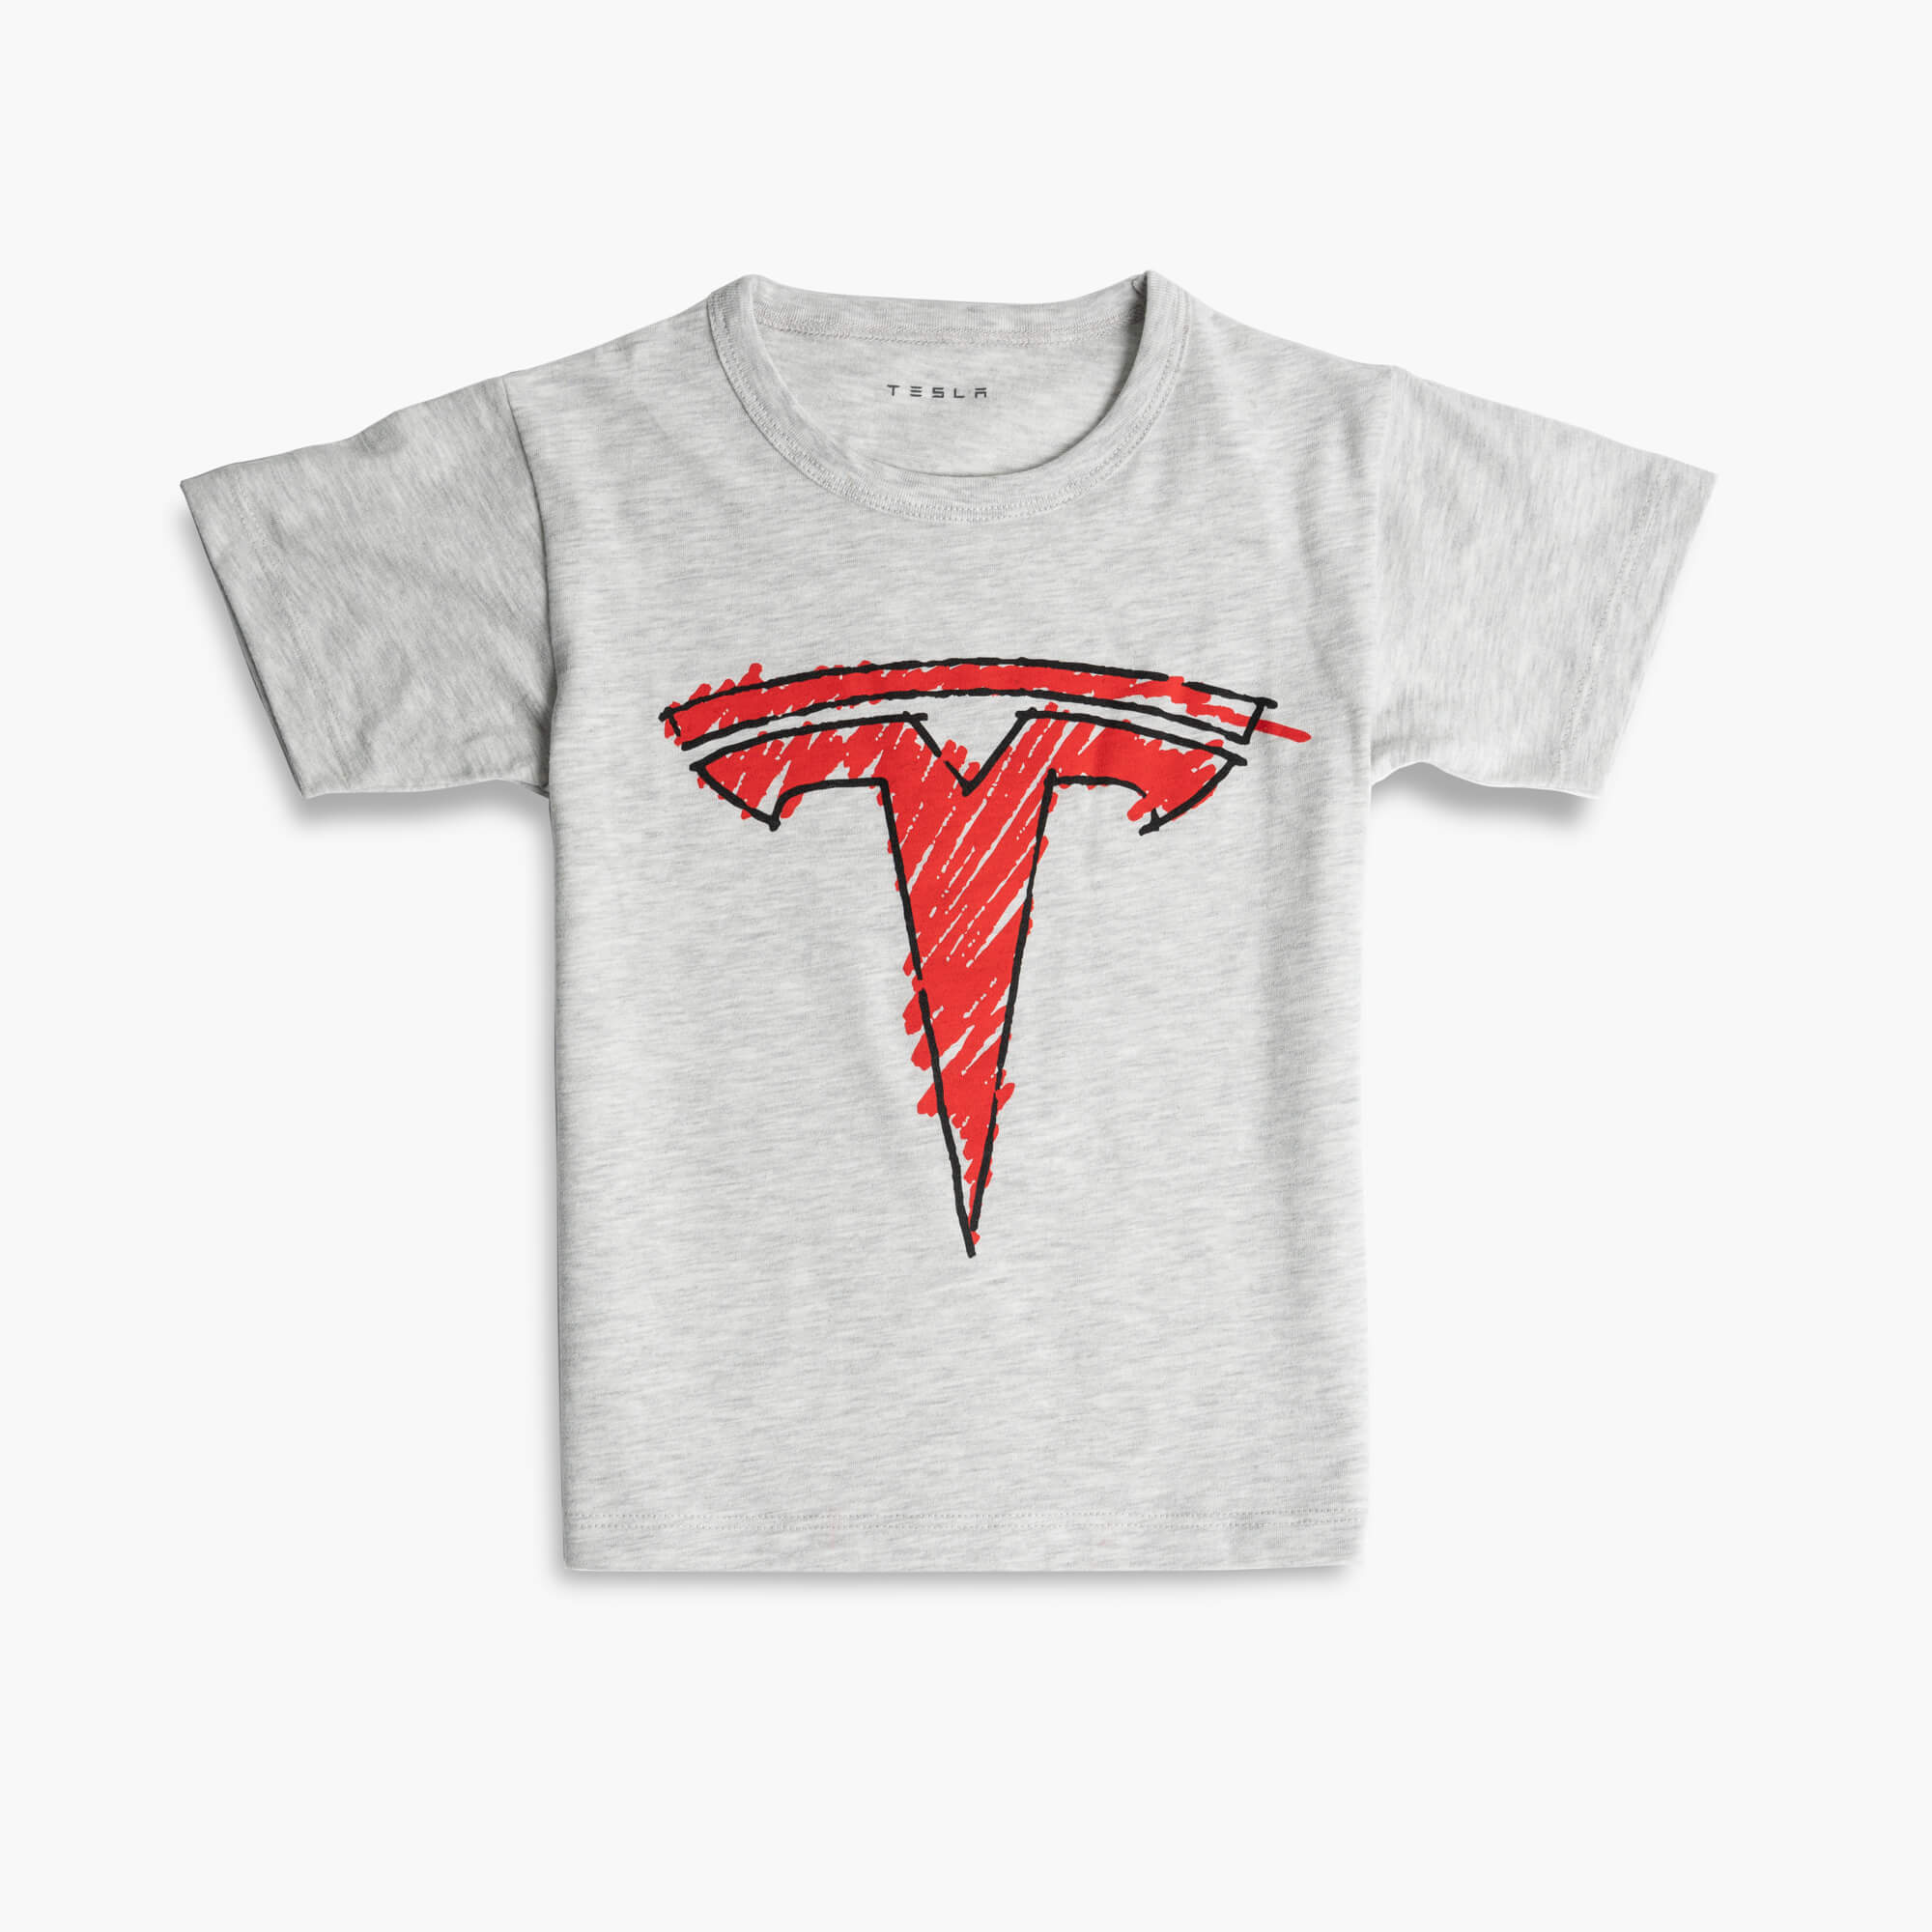 Kinder-T-Shirt mit gekritzeltem T-Logo